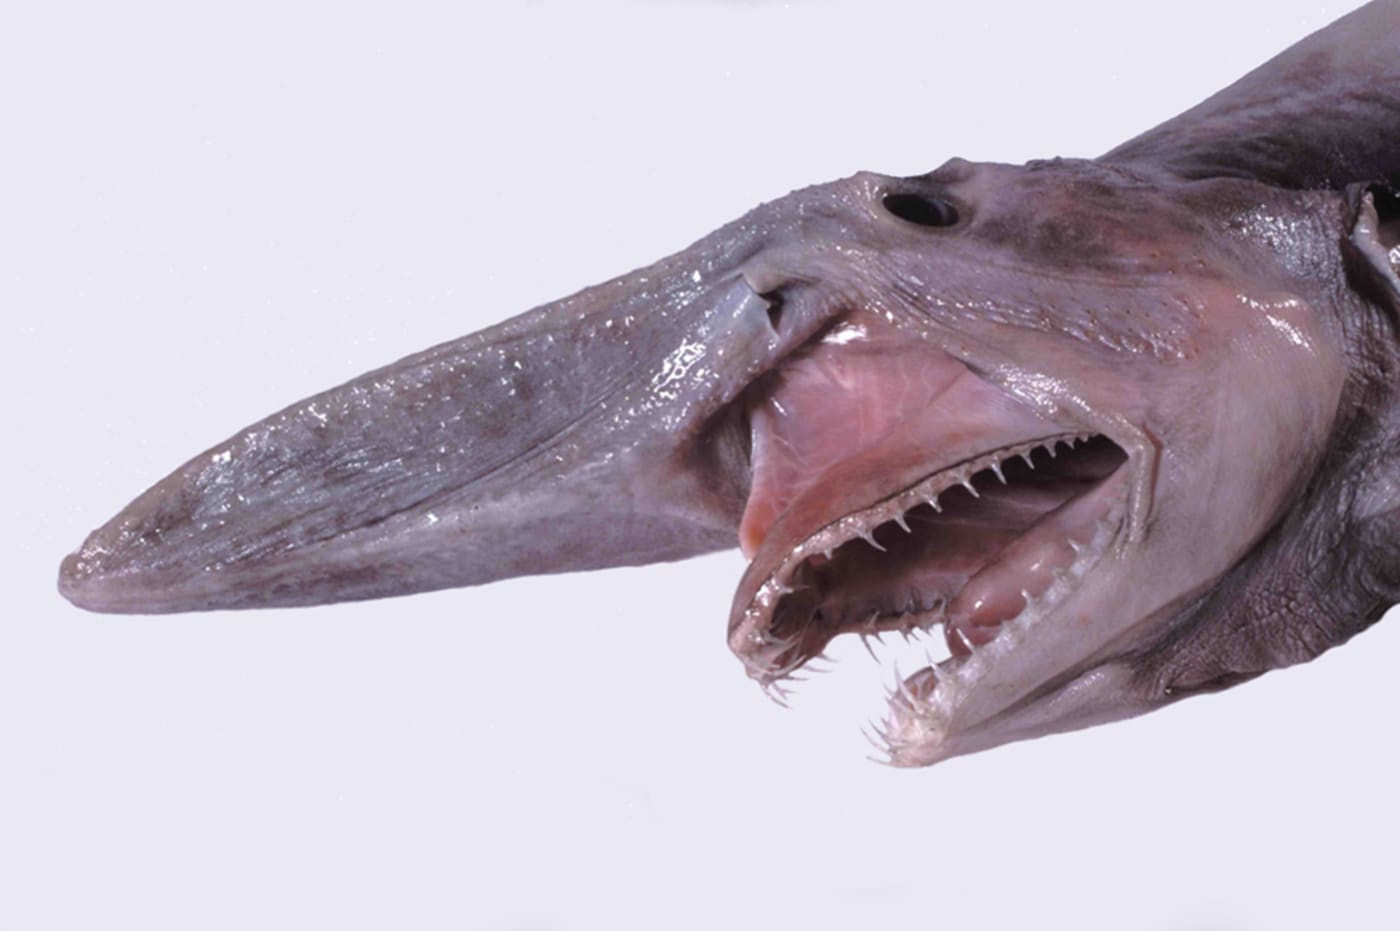 Mistukurina owstoni (Goblin Shark)